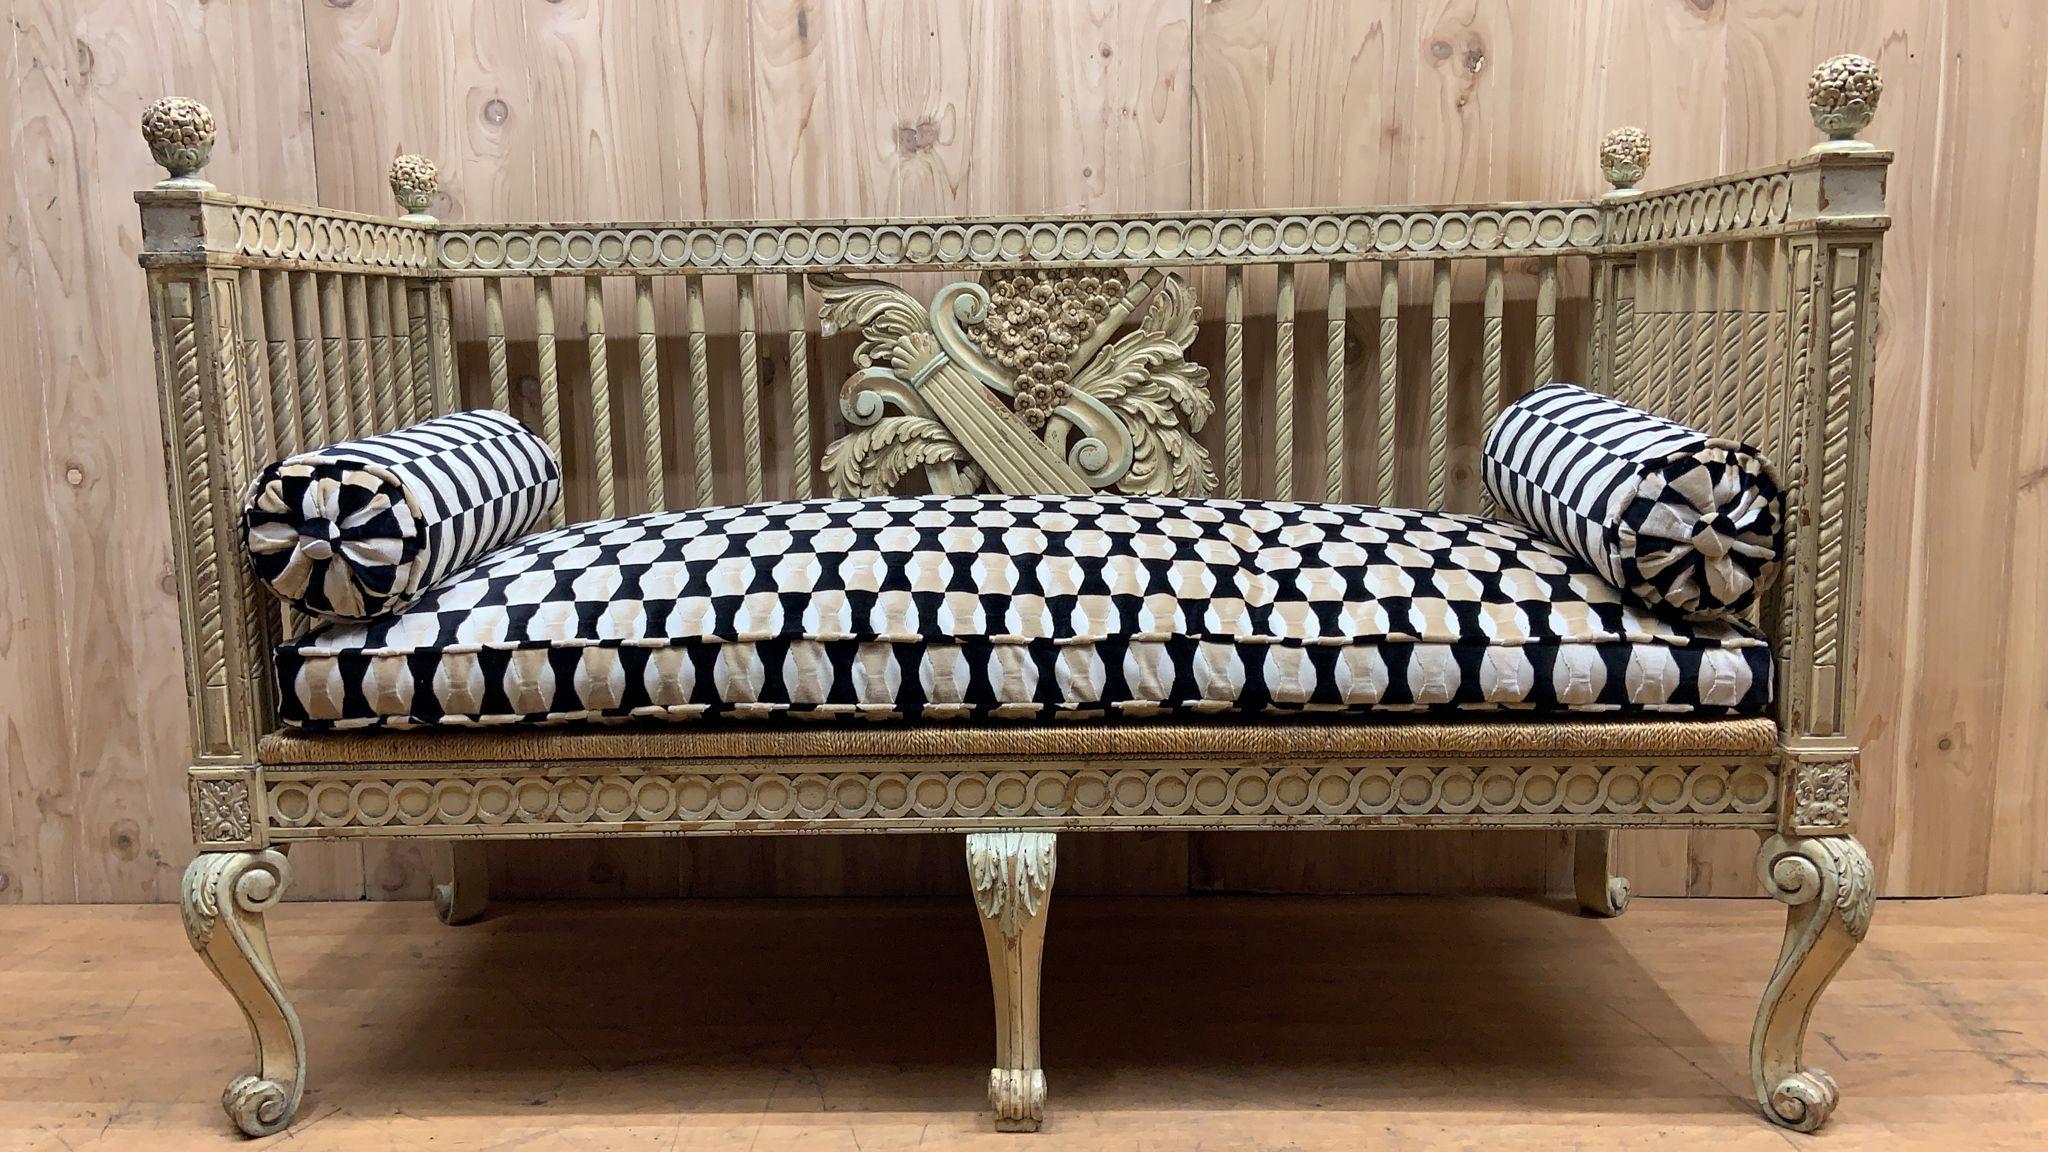 Vintage Italienisch Neoklassischen geschnitzt Settee Bank

Exquisites italienisches neoklassizistisches gemaltes Sofa im Vintage-Stil. Zu den beeindruckenden Details gehören das geschnitzte musikalische Motiv einer Leier und einer Trompete auf der